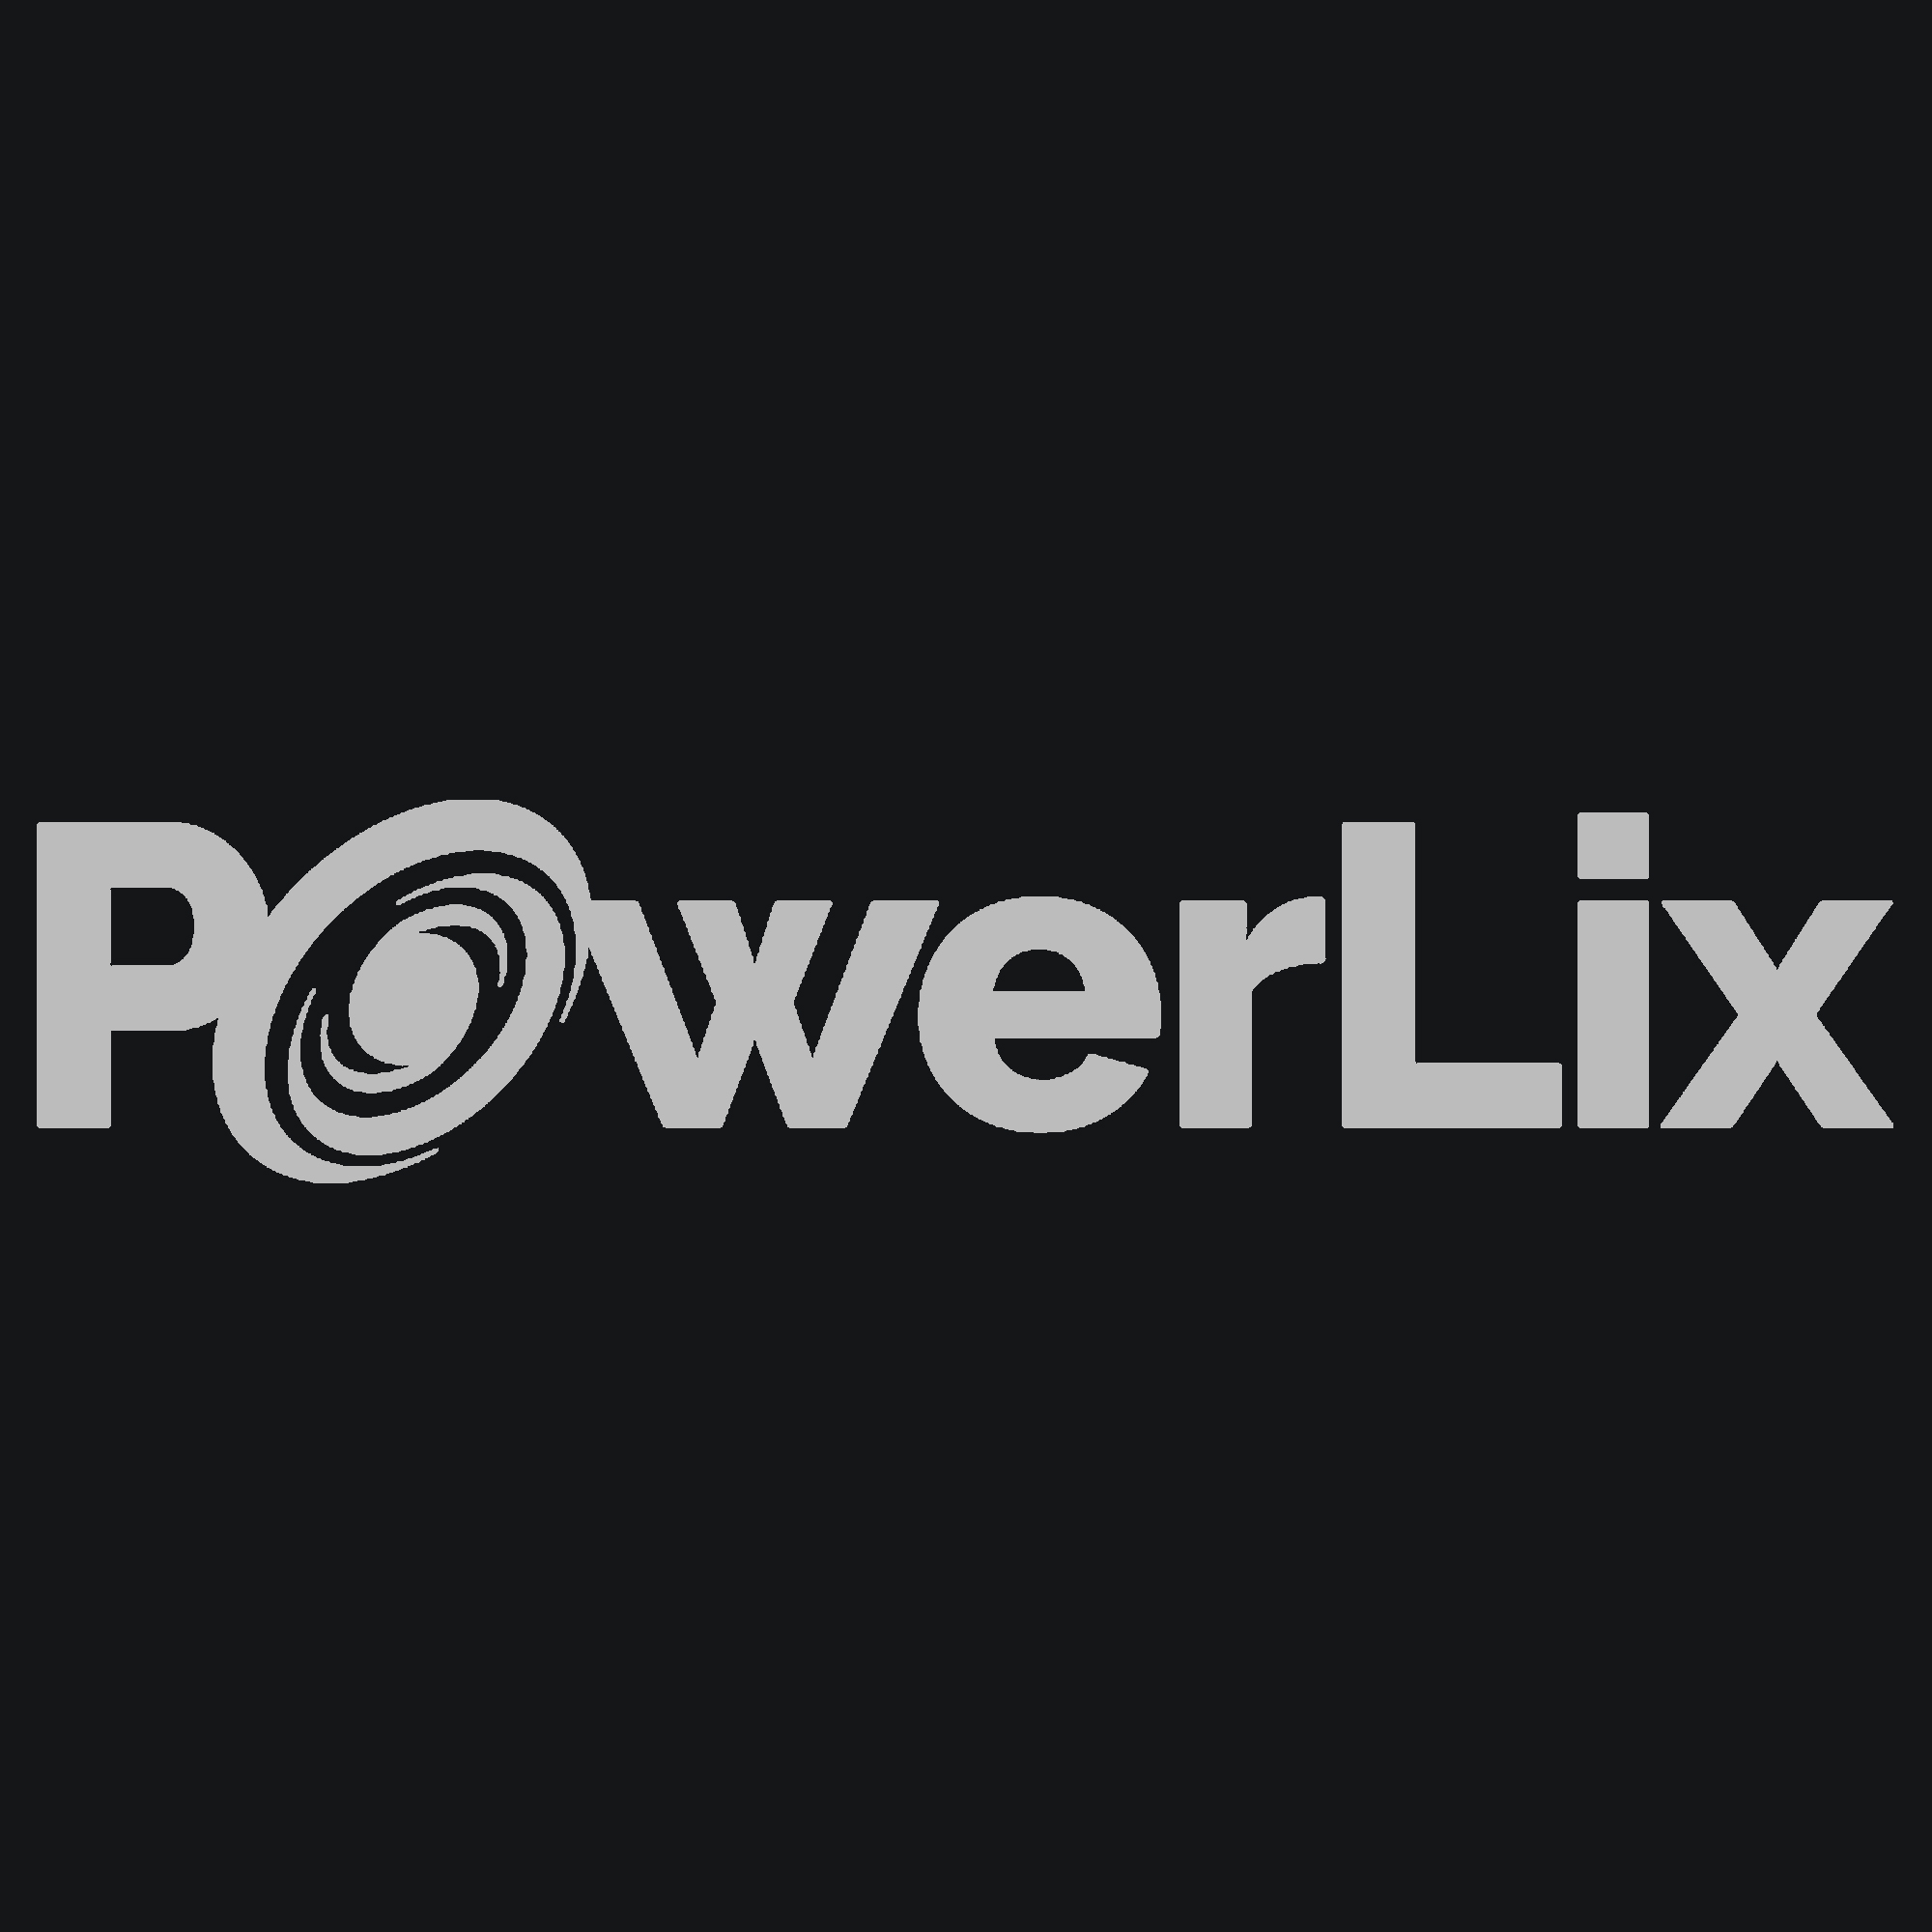 Powerlix